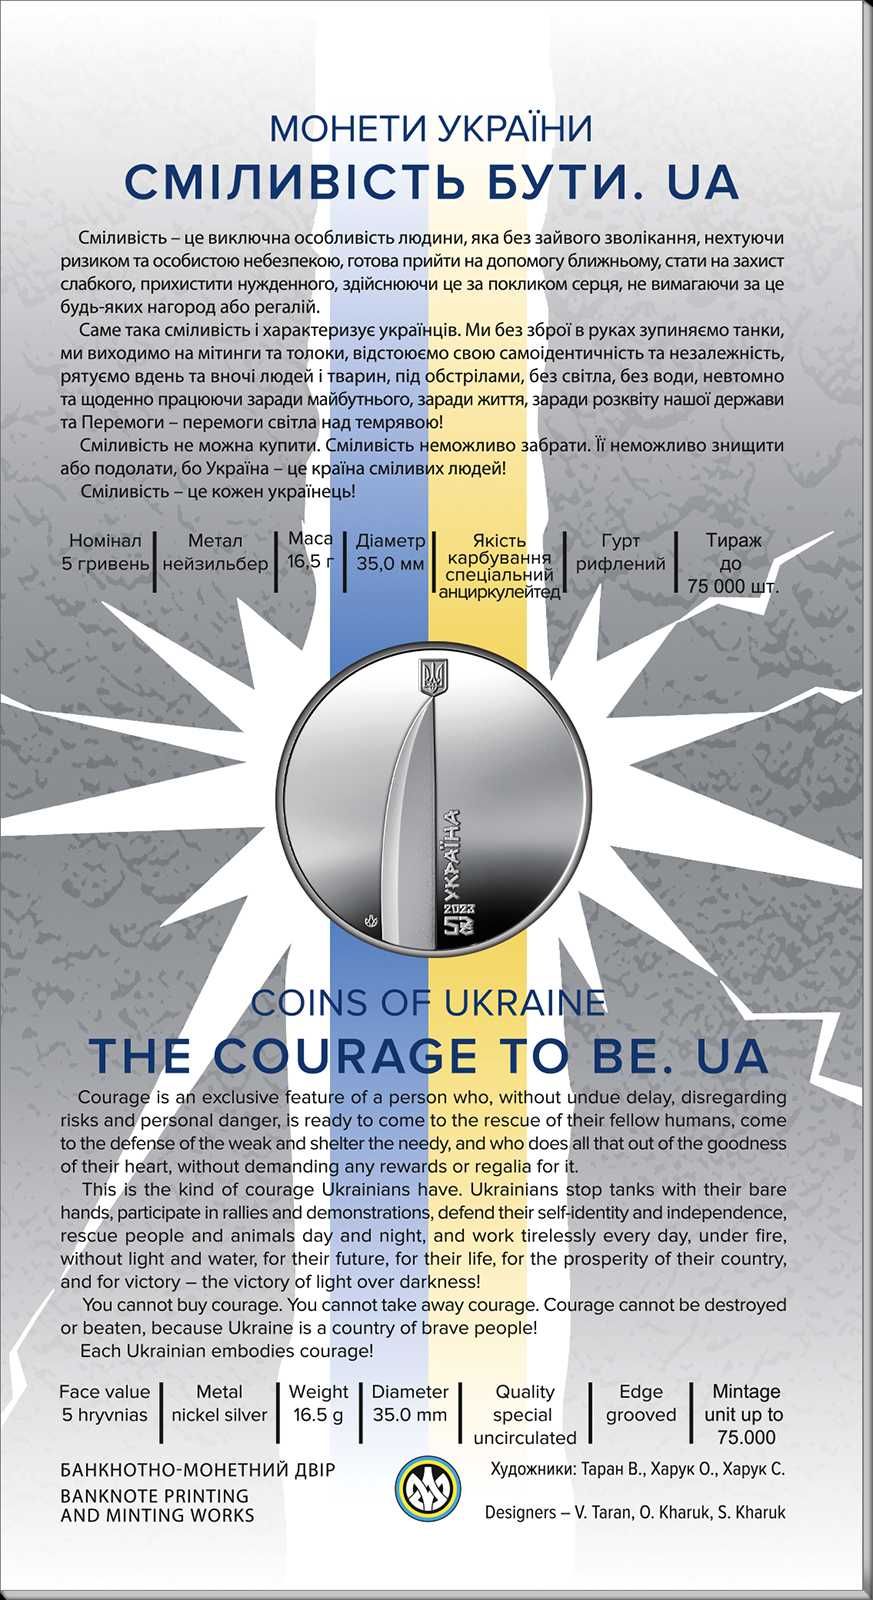 Пам’ятна монета "Сміливість бути. UA" у сувенірній упаковці.